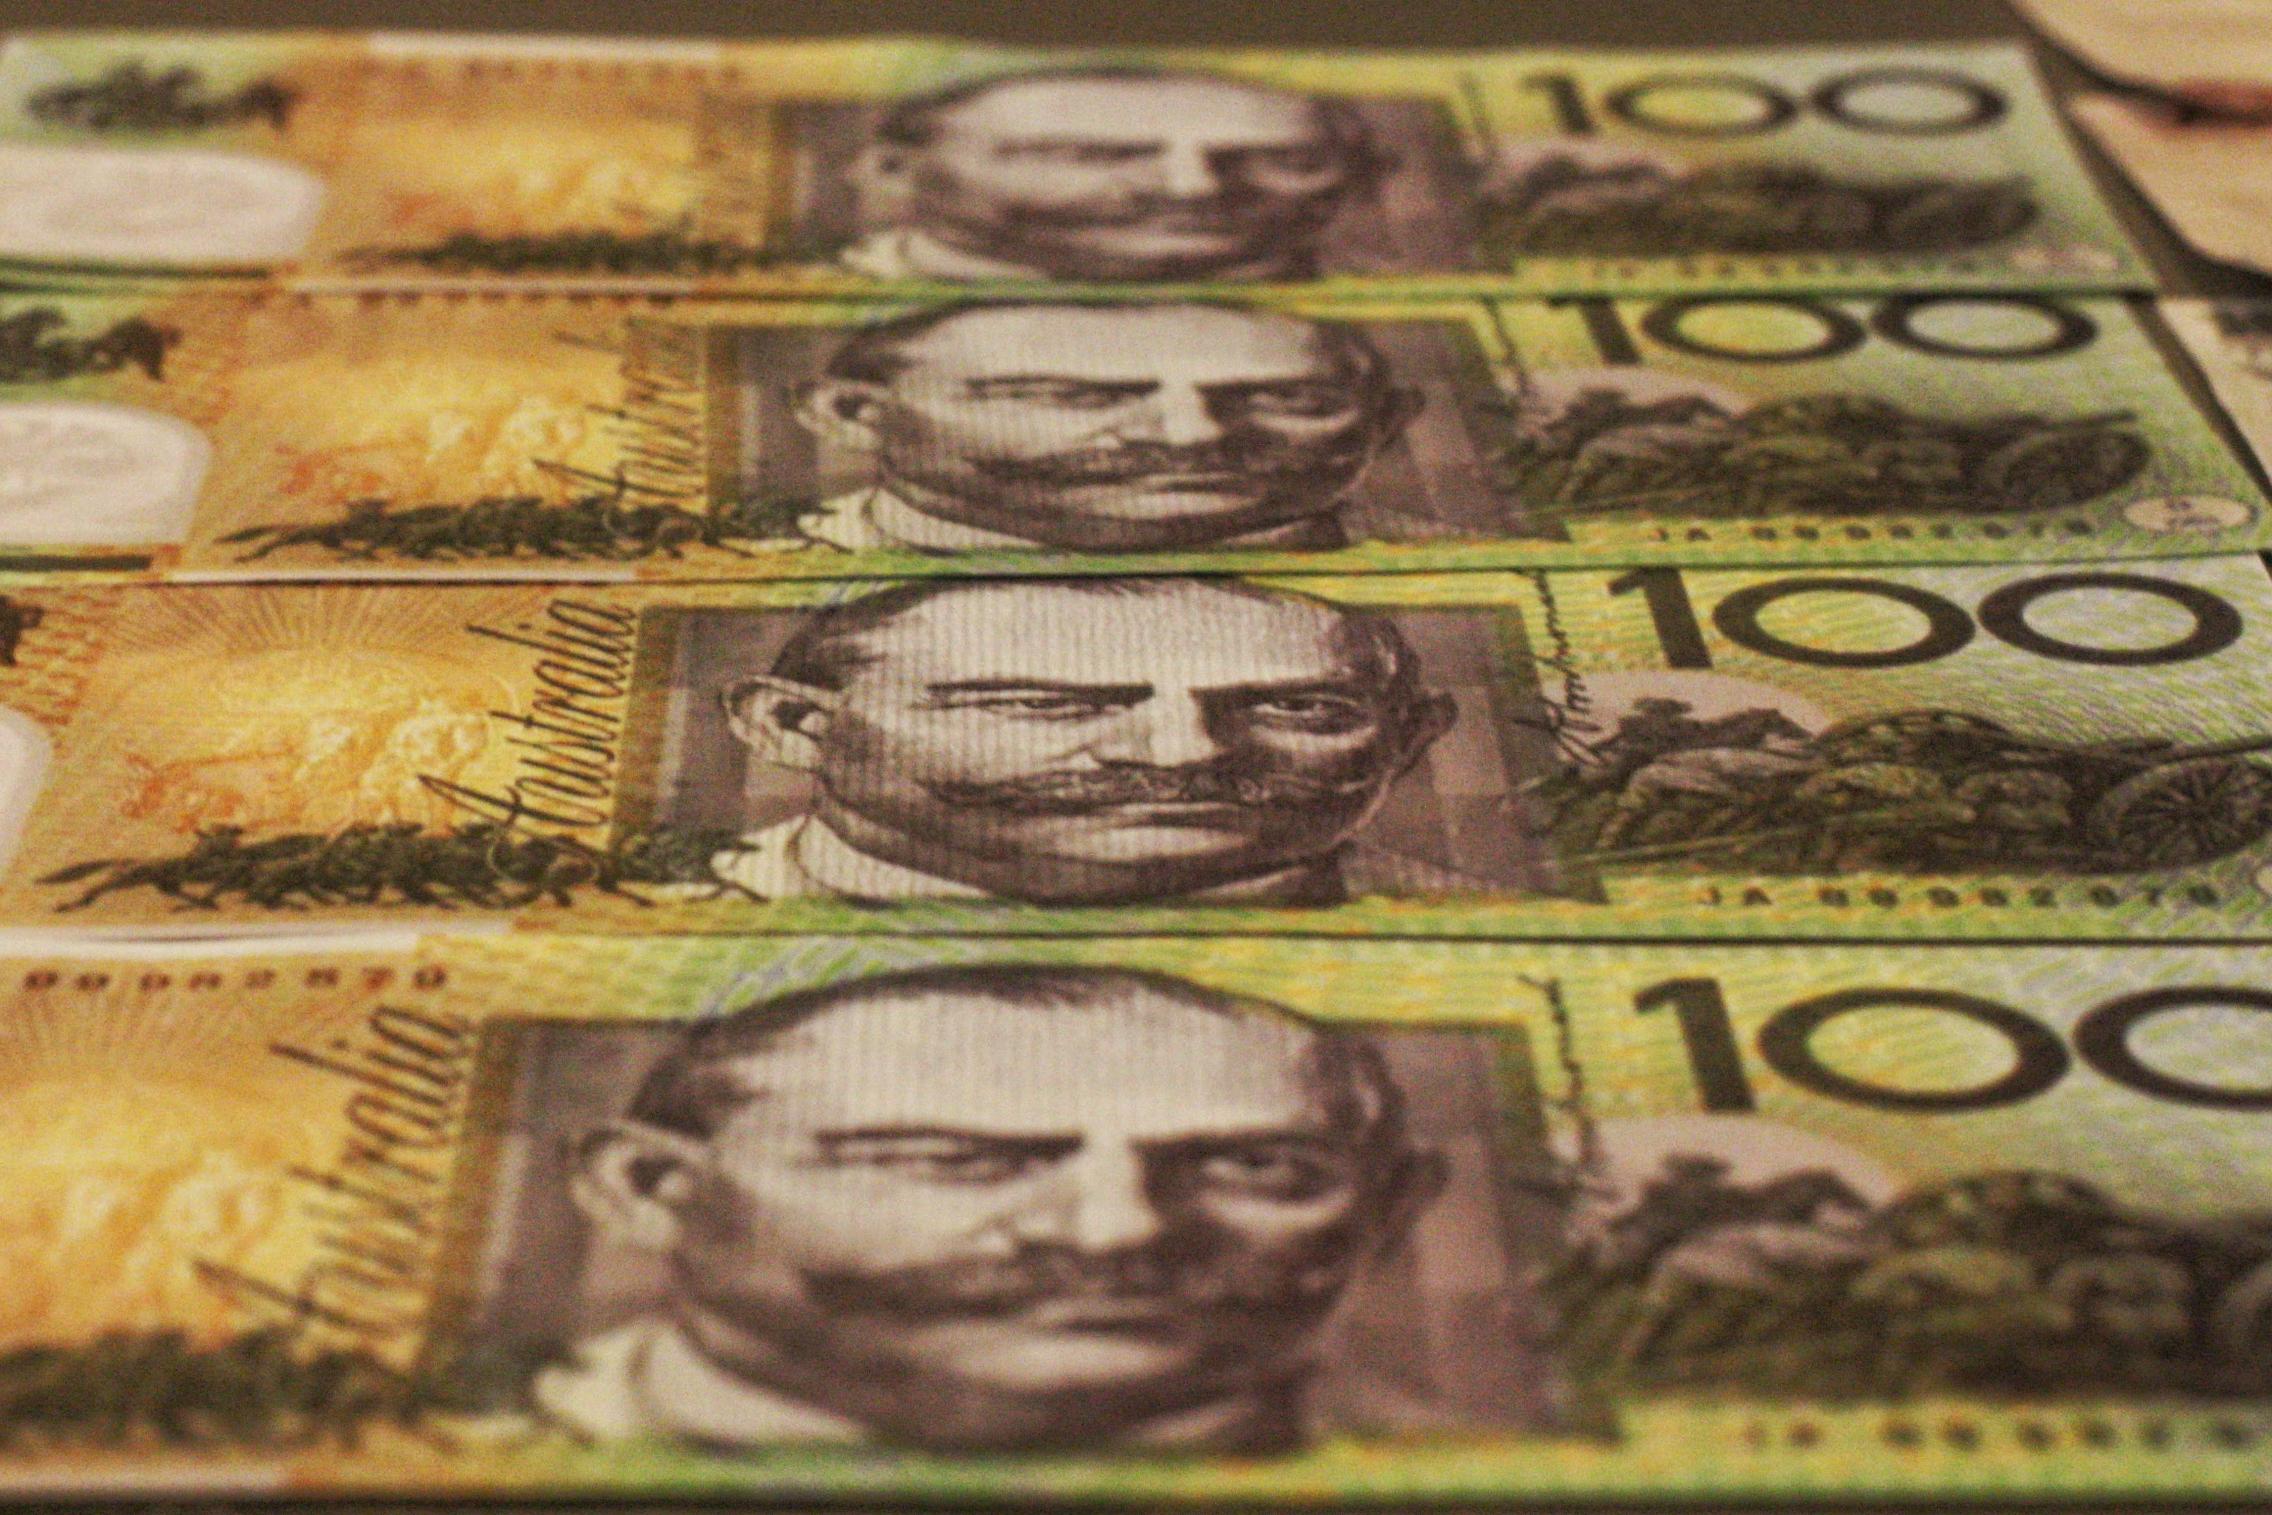 Australian one hundred dollar notes